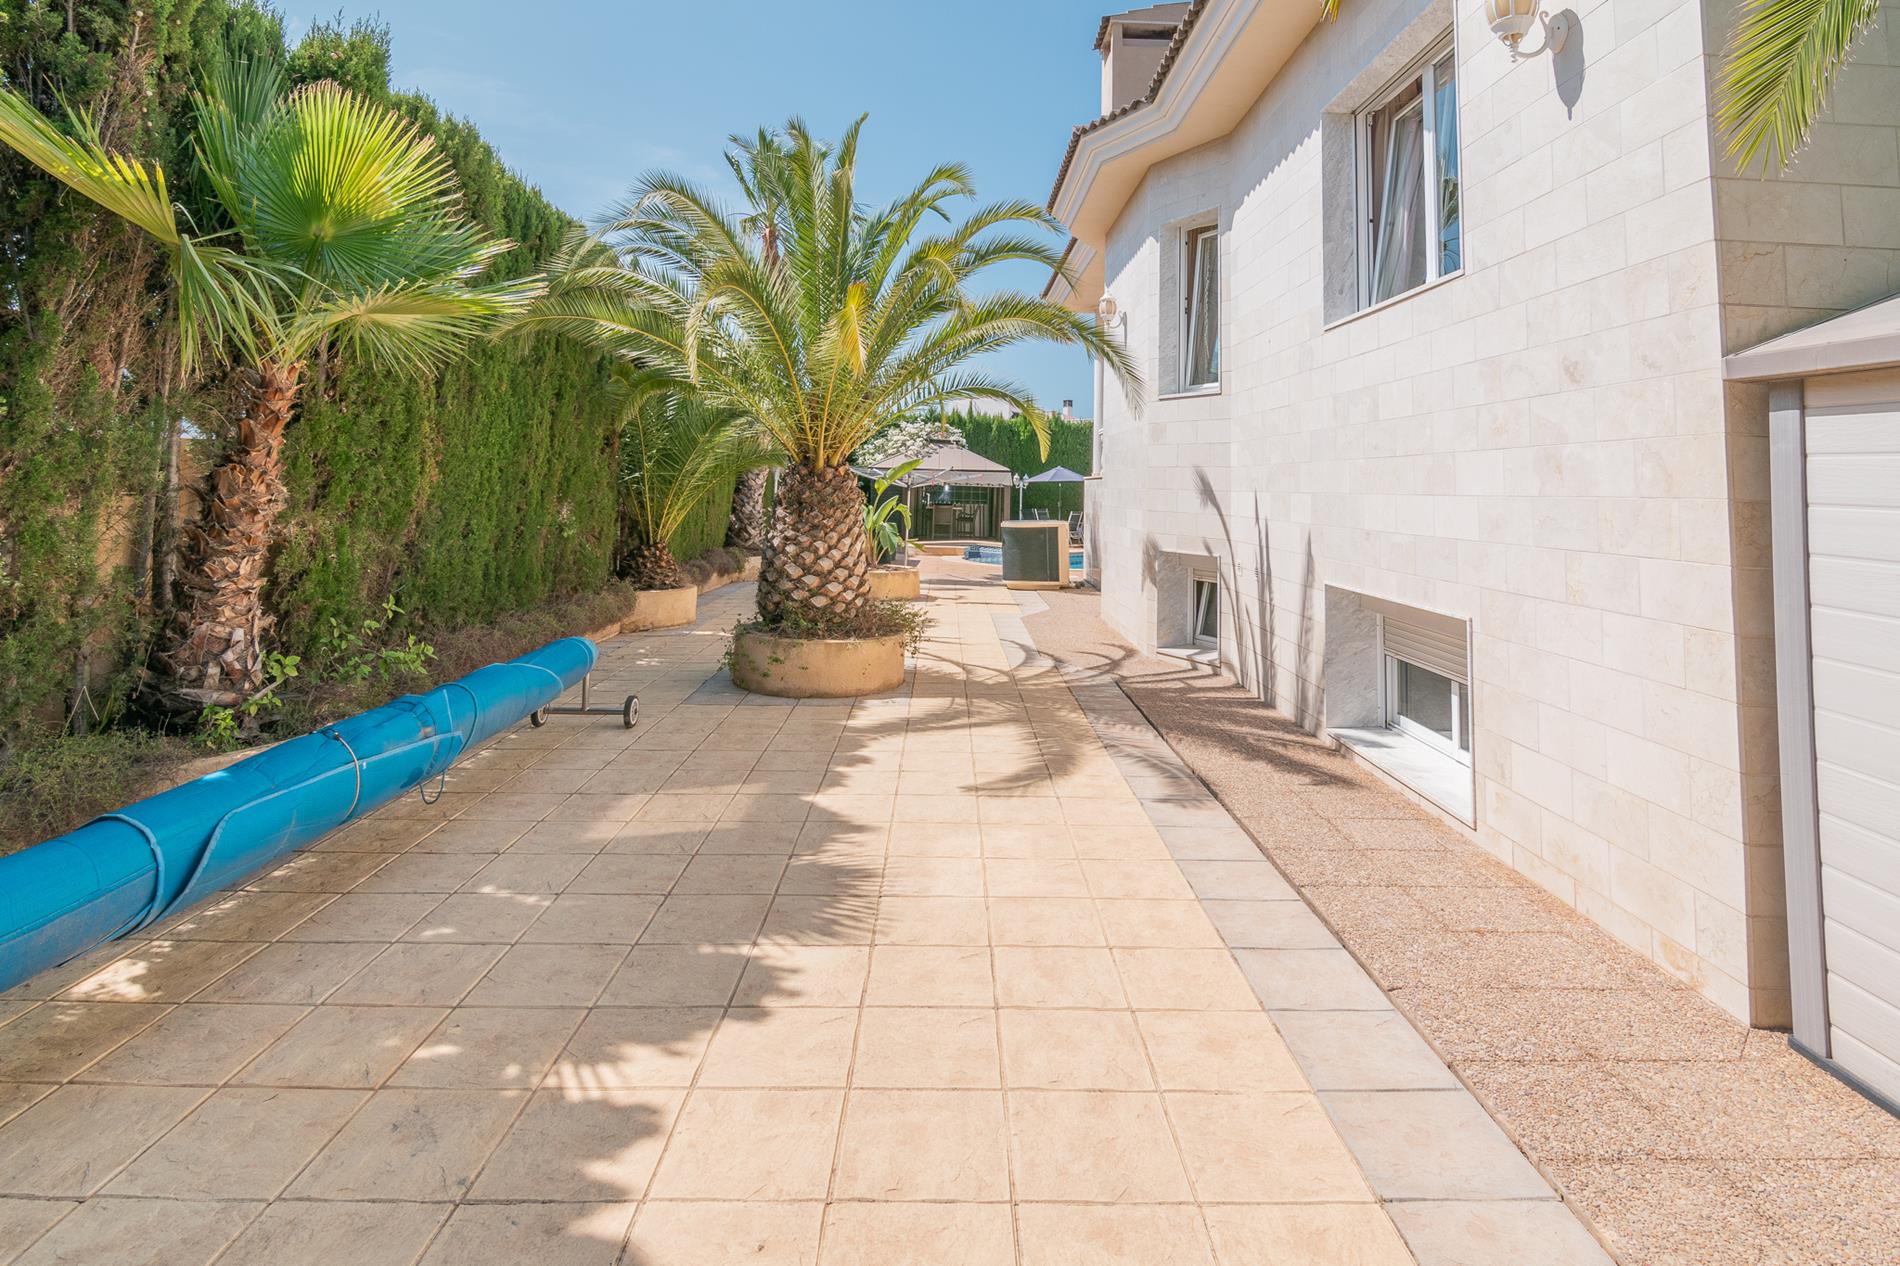 Villa te koop in Alfaz del Pi met tuin en privé zwembad, vlakbij het dorp